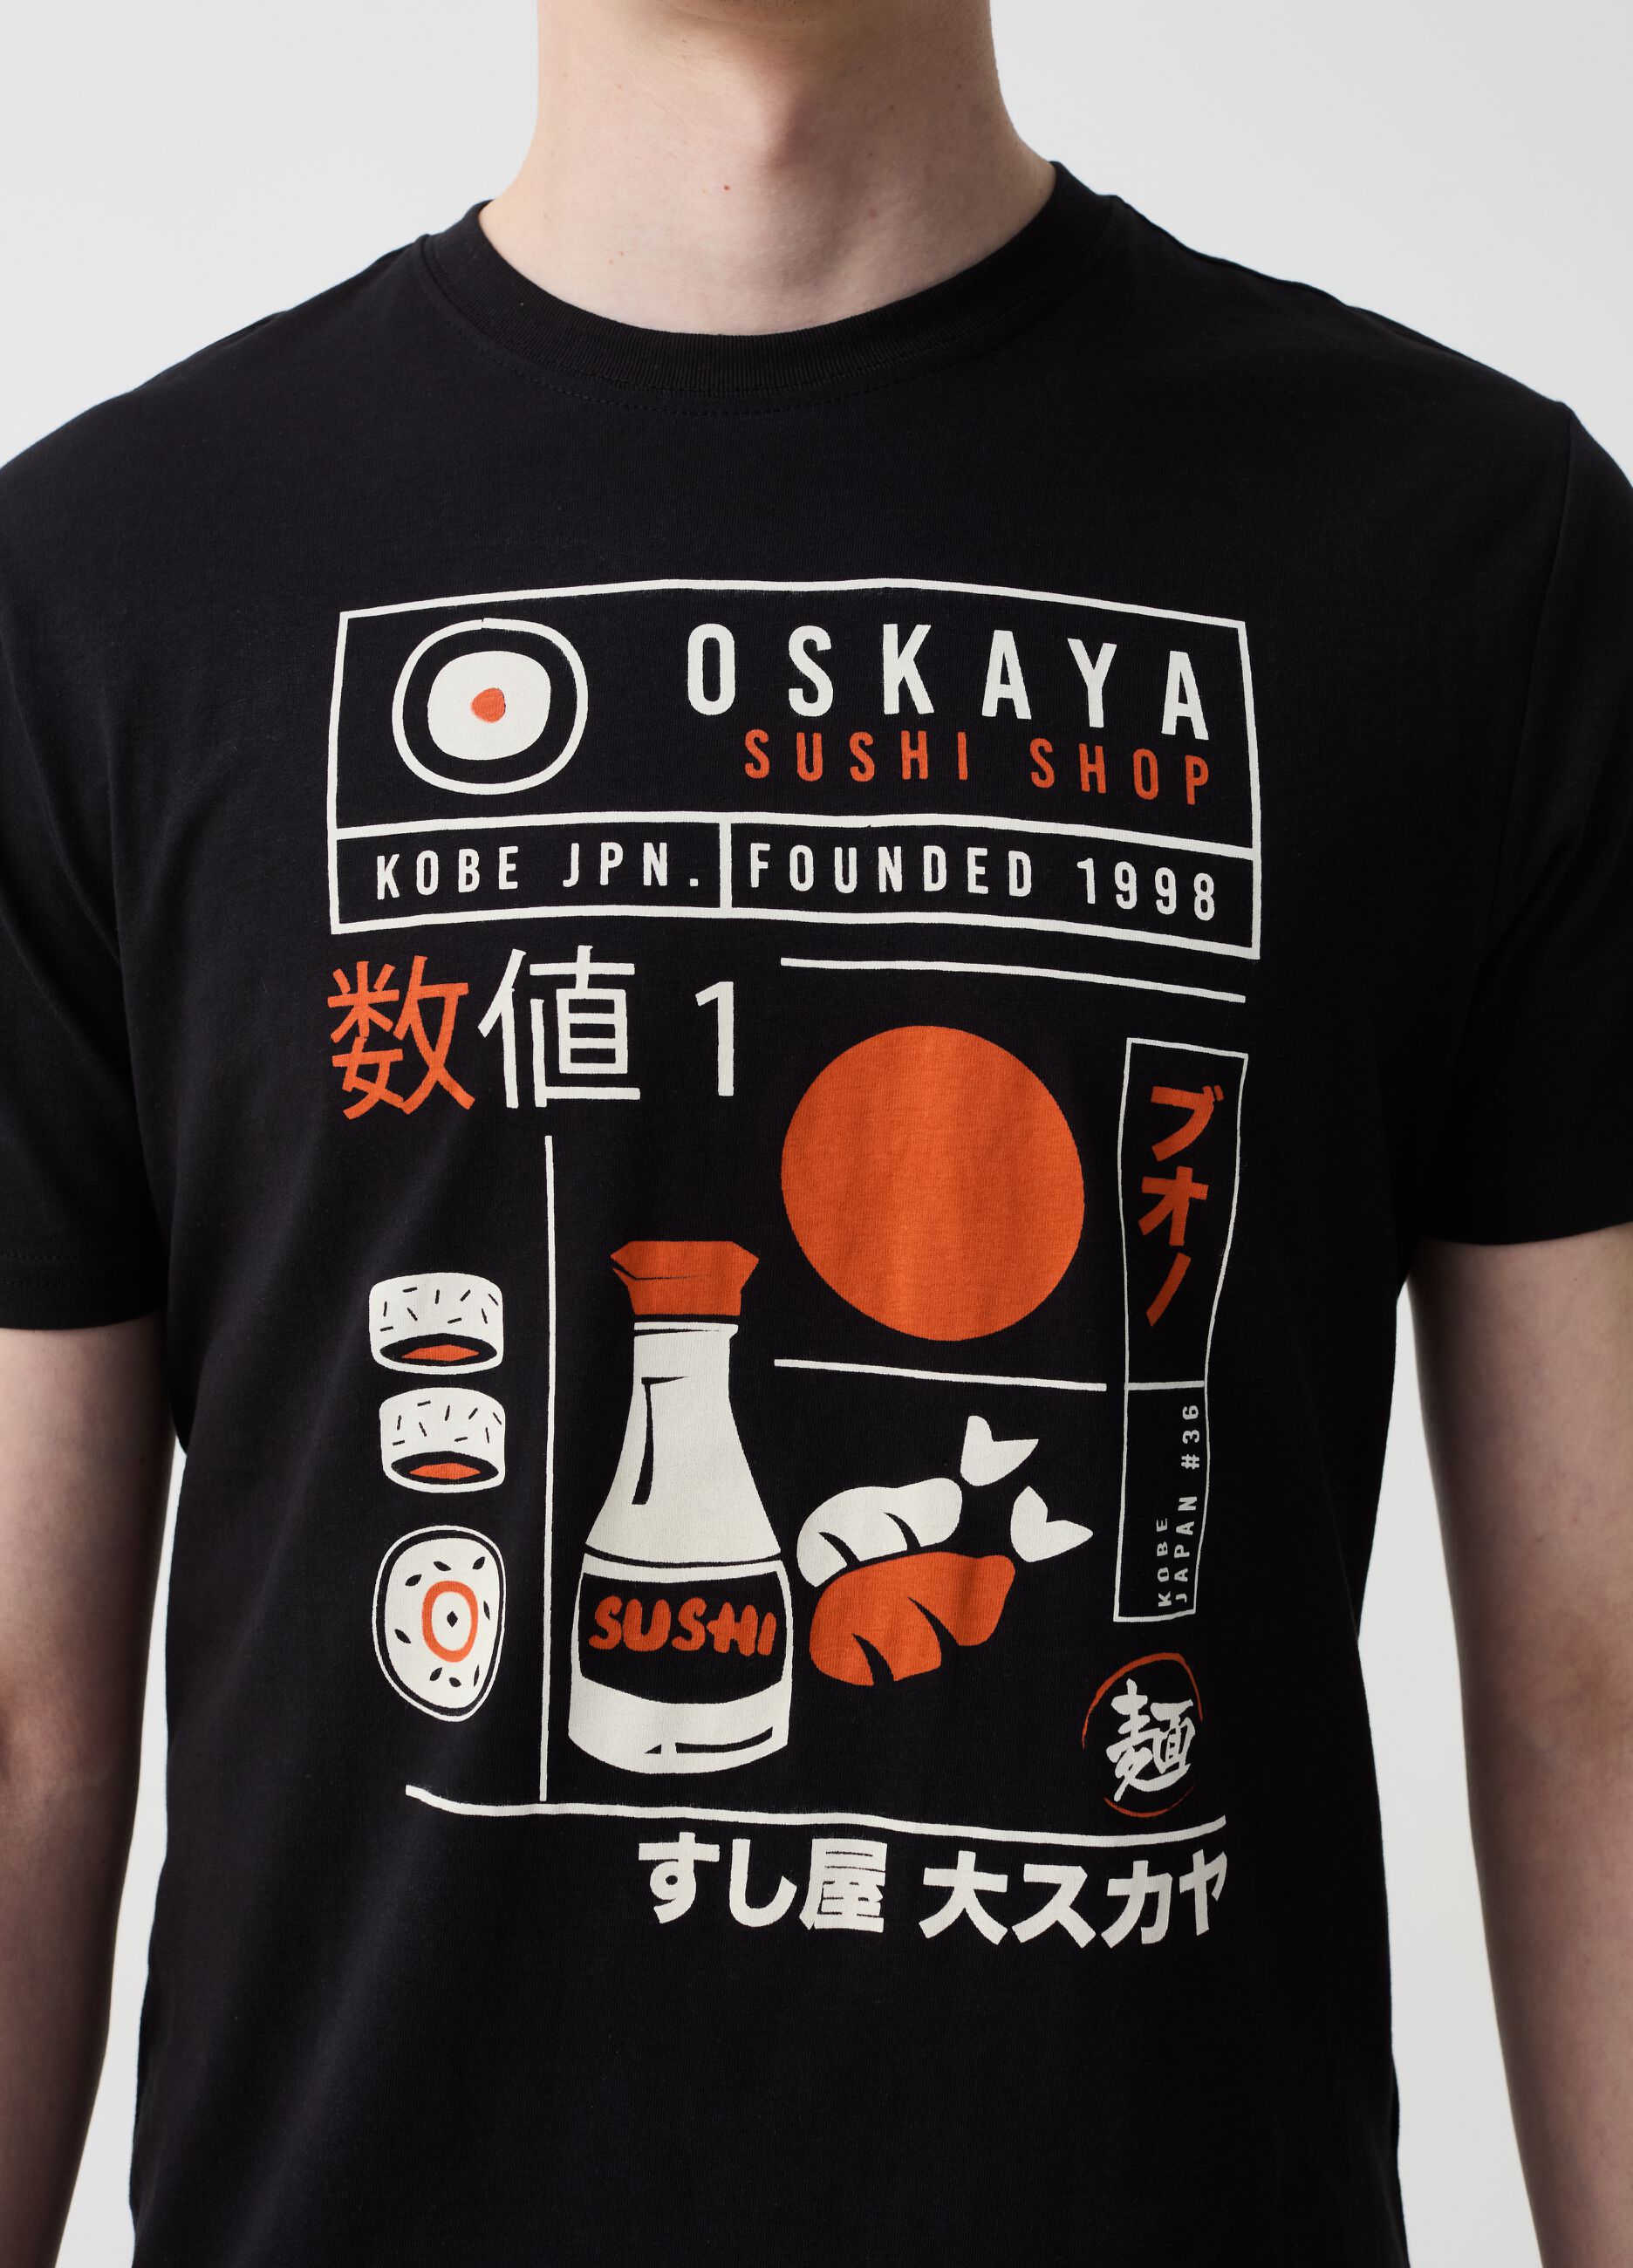 Camiseta con estampado sushi shop